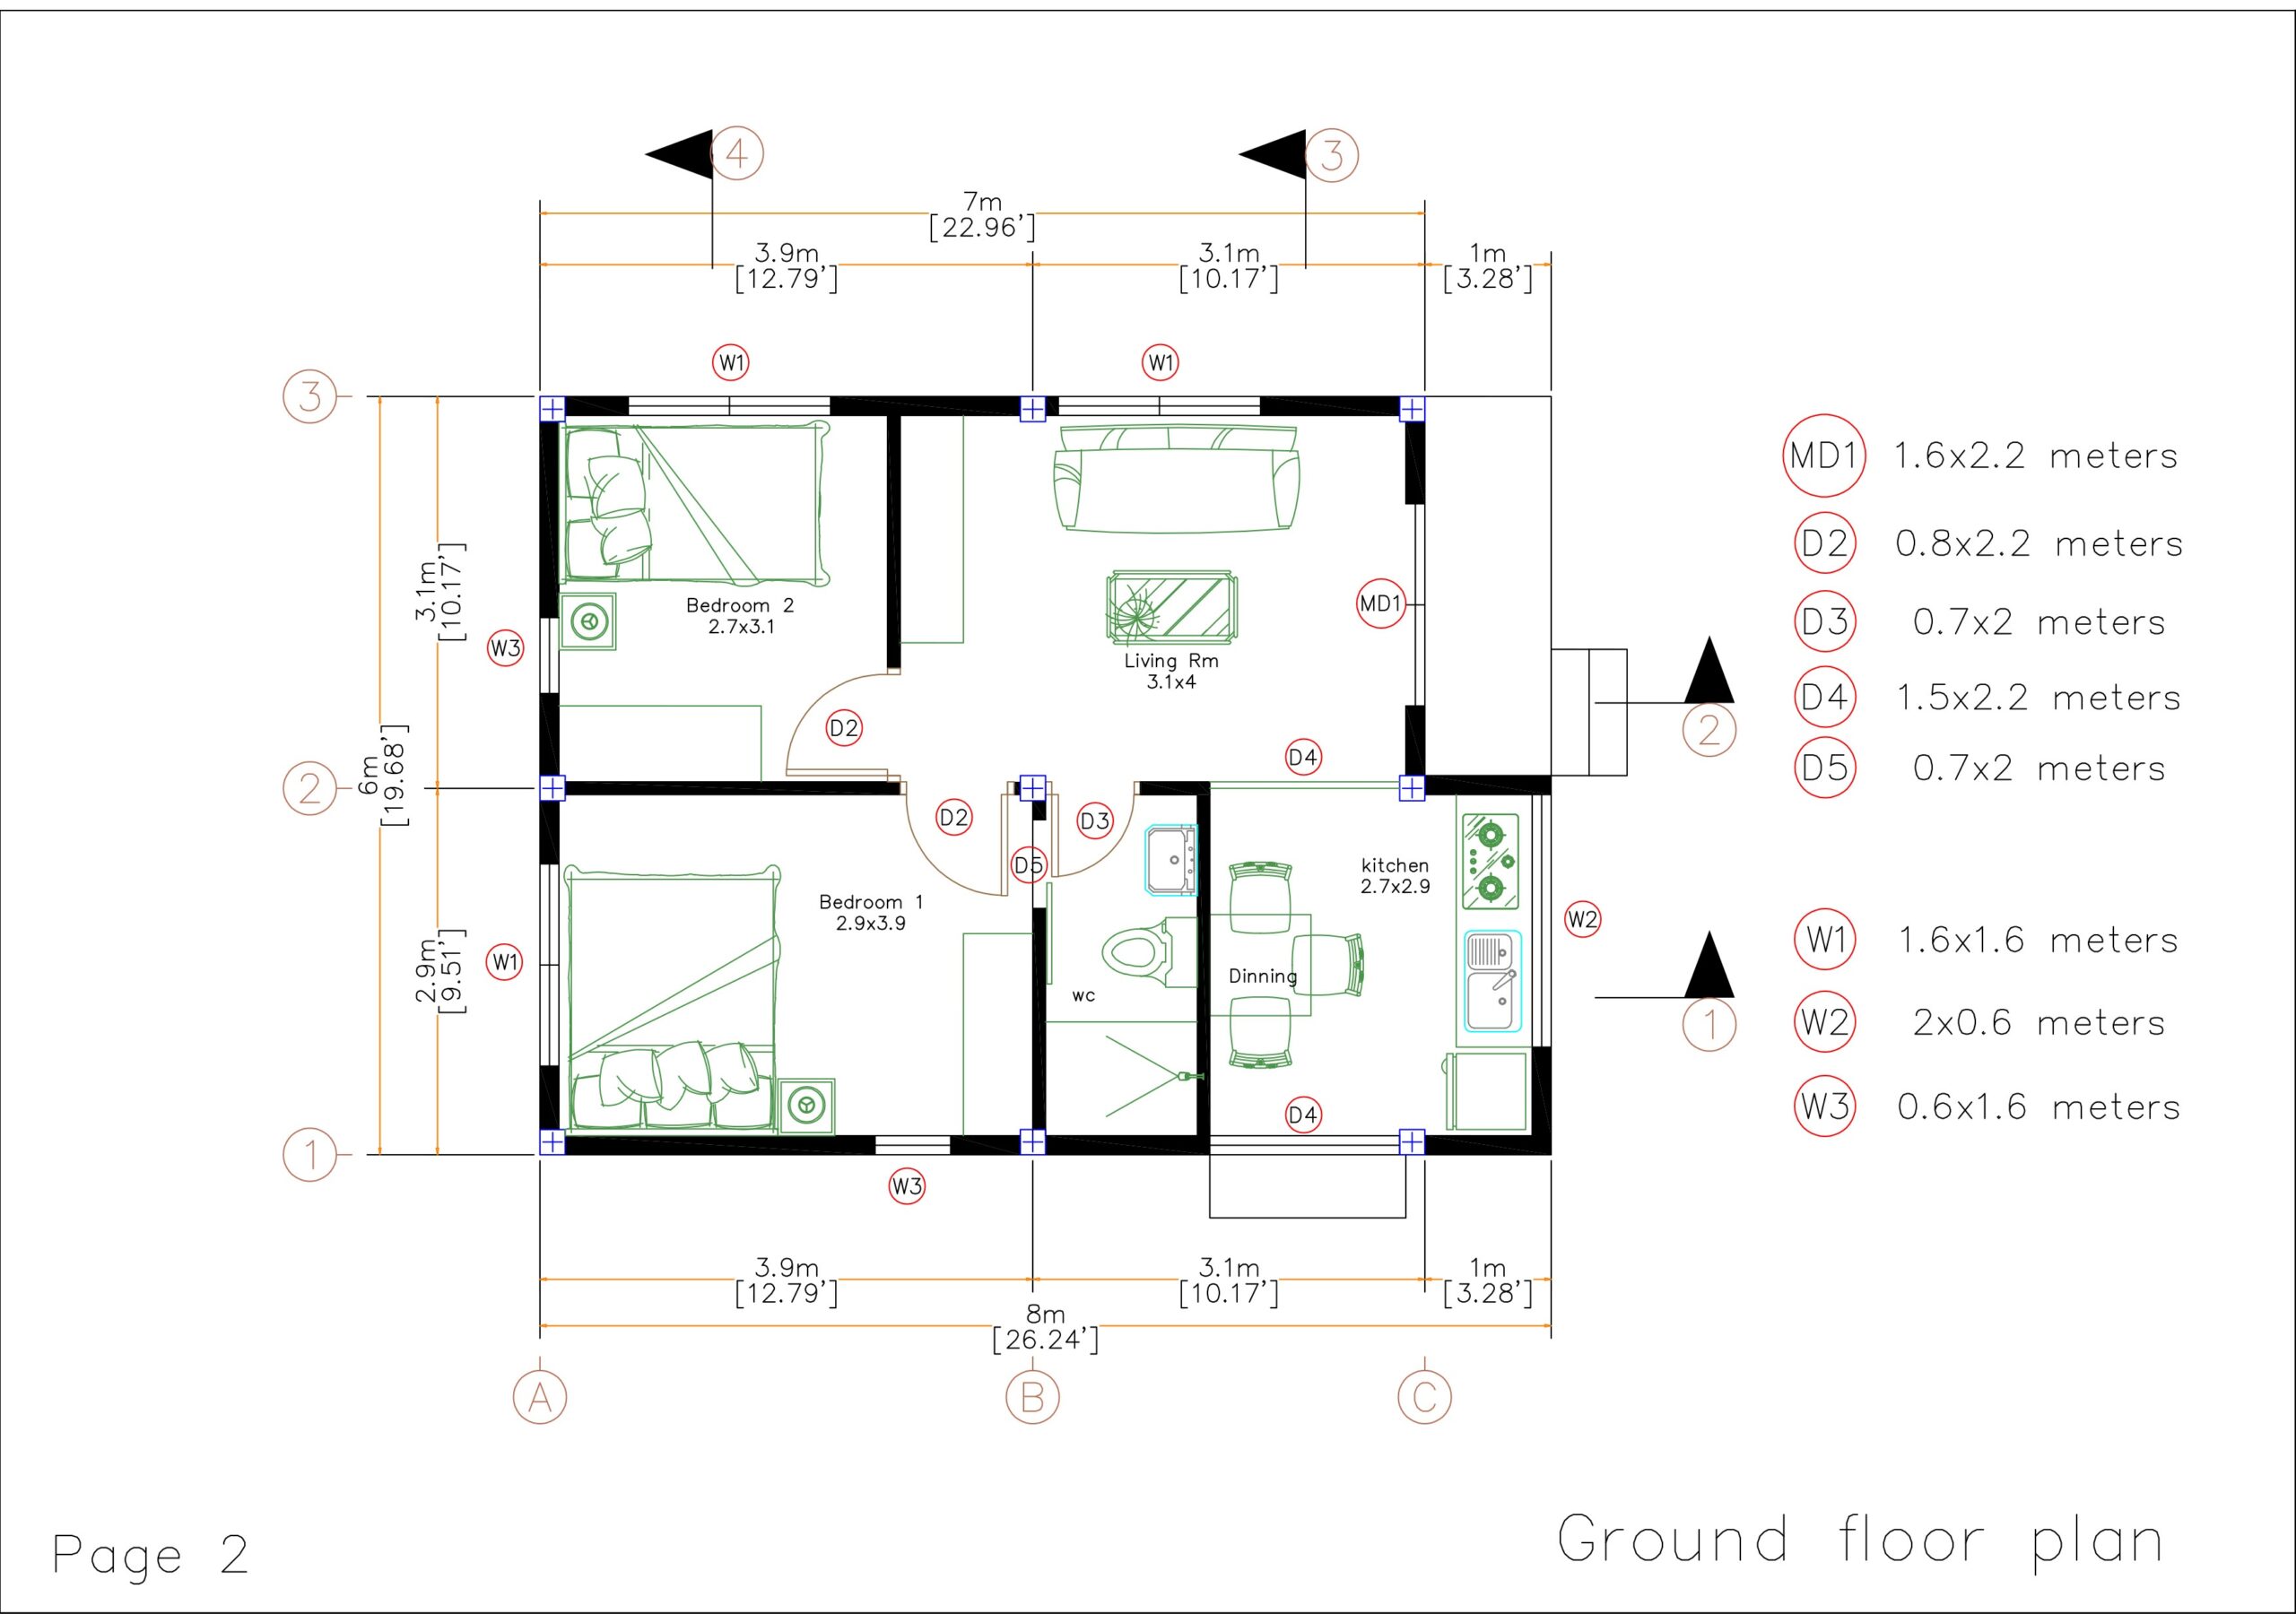 20x26 Small House Design 6x8 Meter 2 Beds Pdf Full Plan Ground Floor Plan Door and window